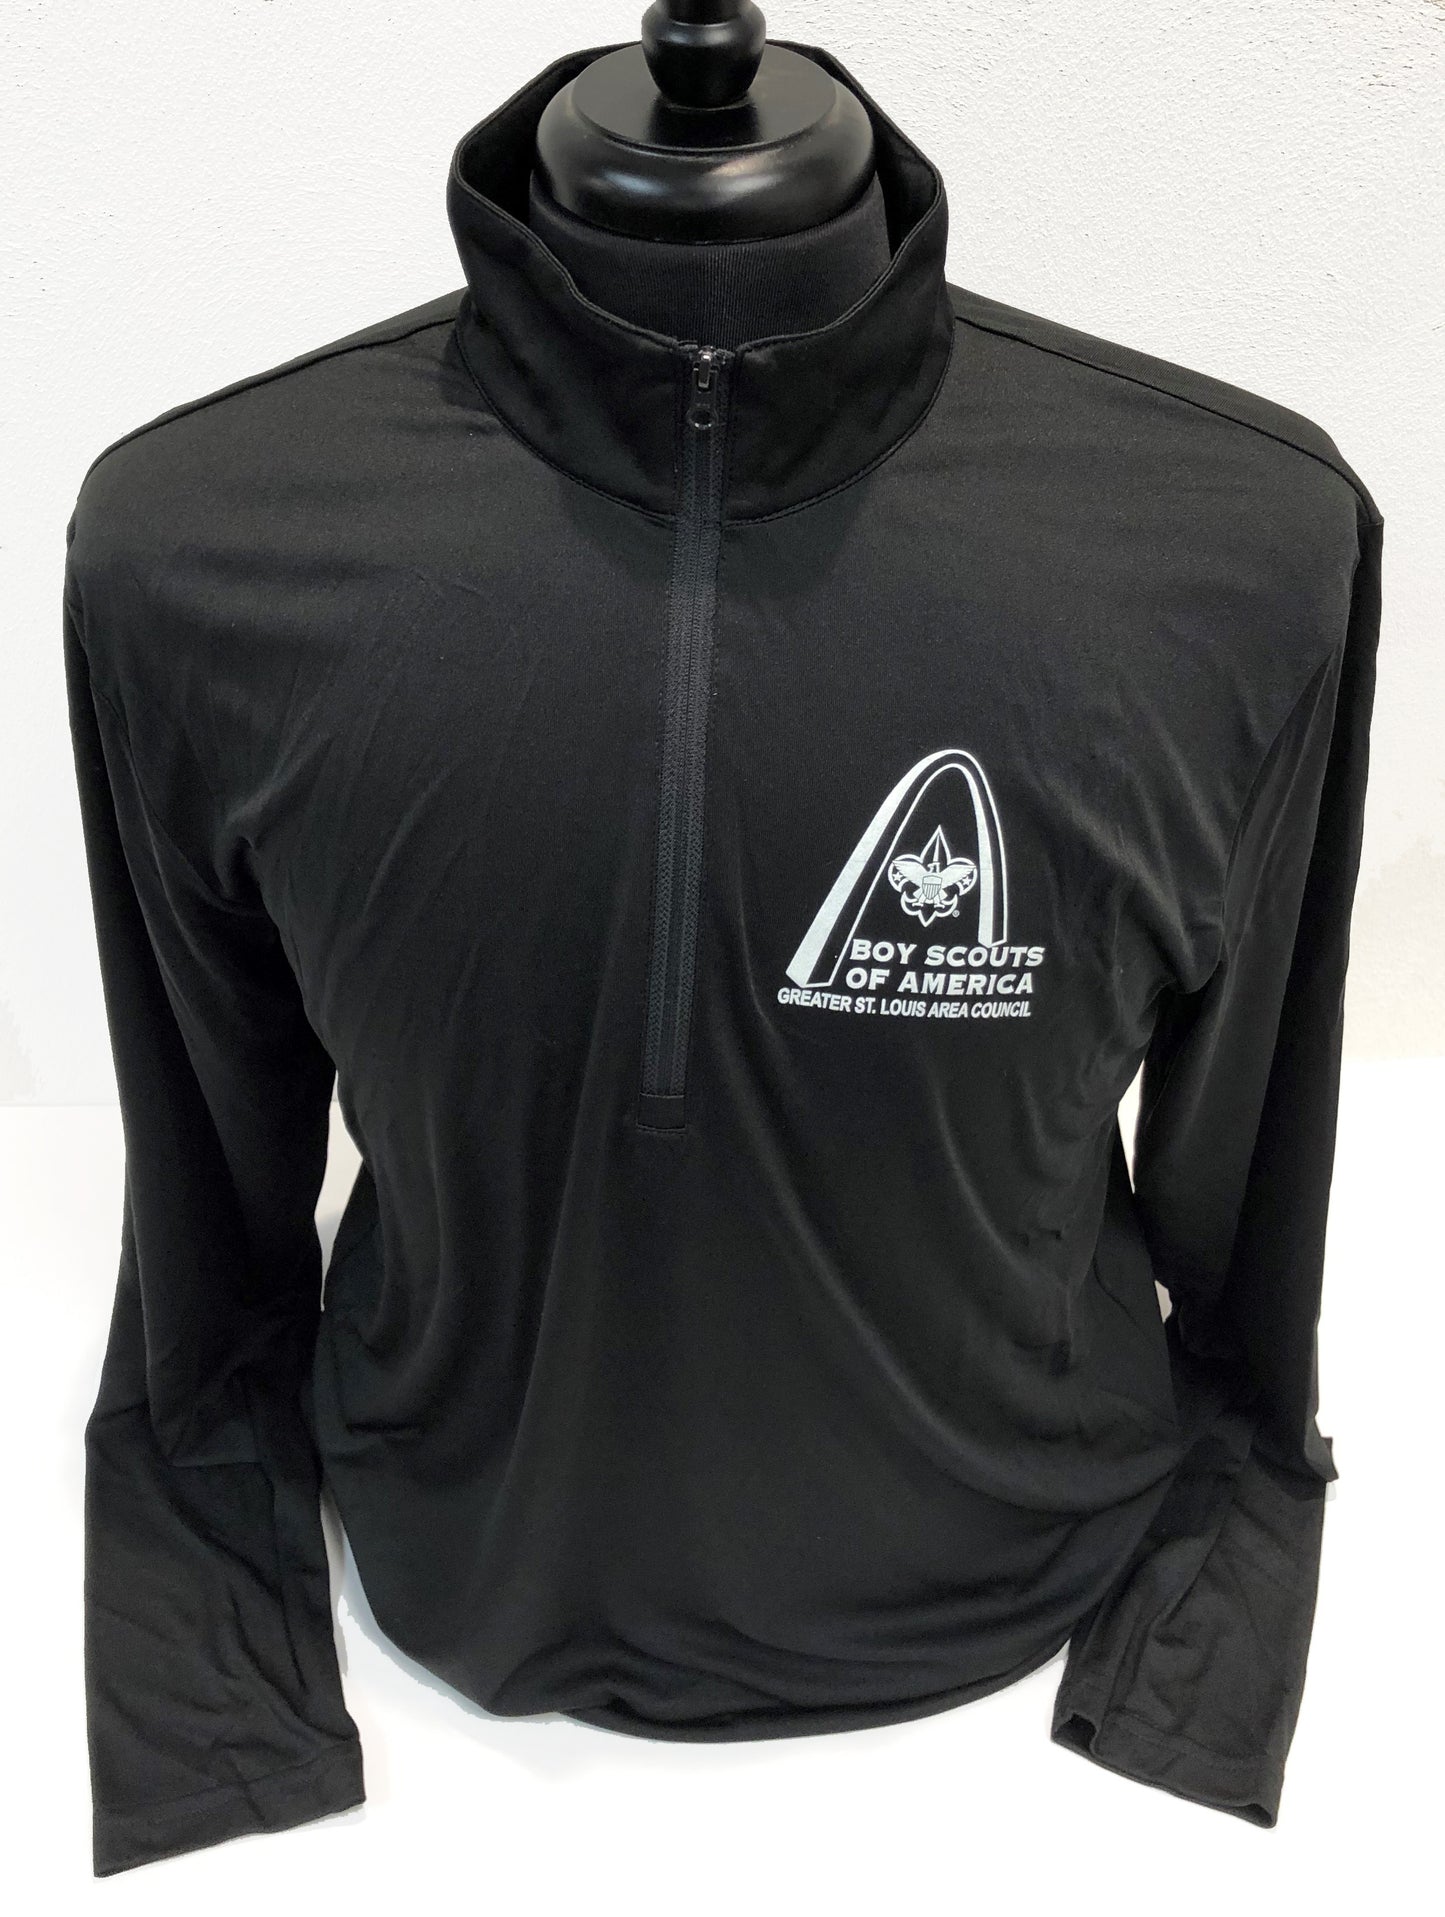 Shirt Pullover 1/4 Zip Tech - GSLAC Arch - Men's - Black